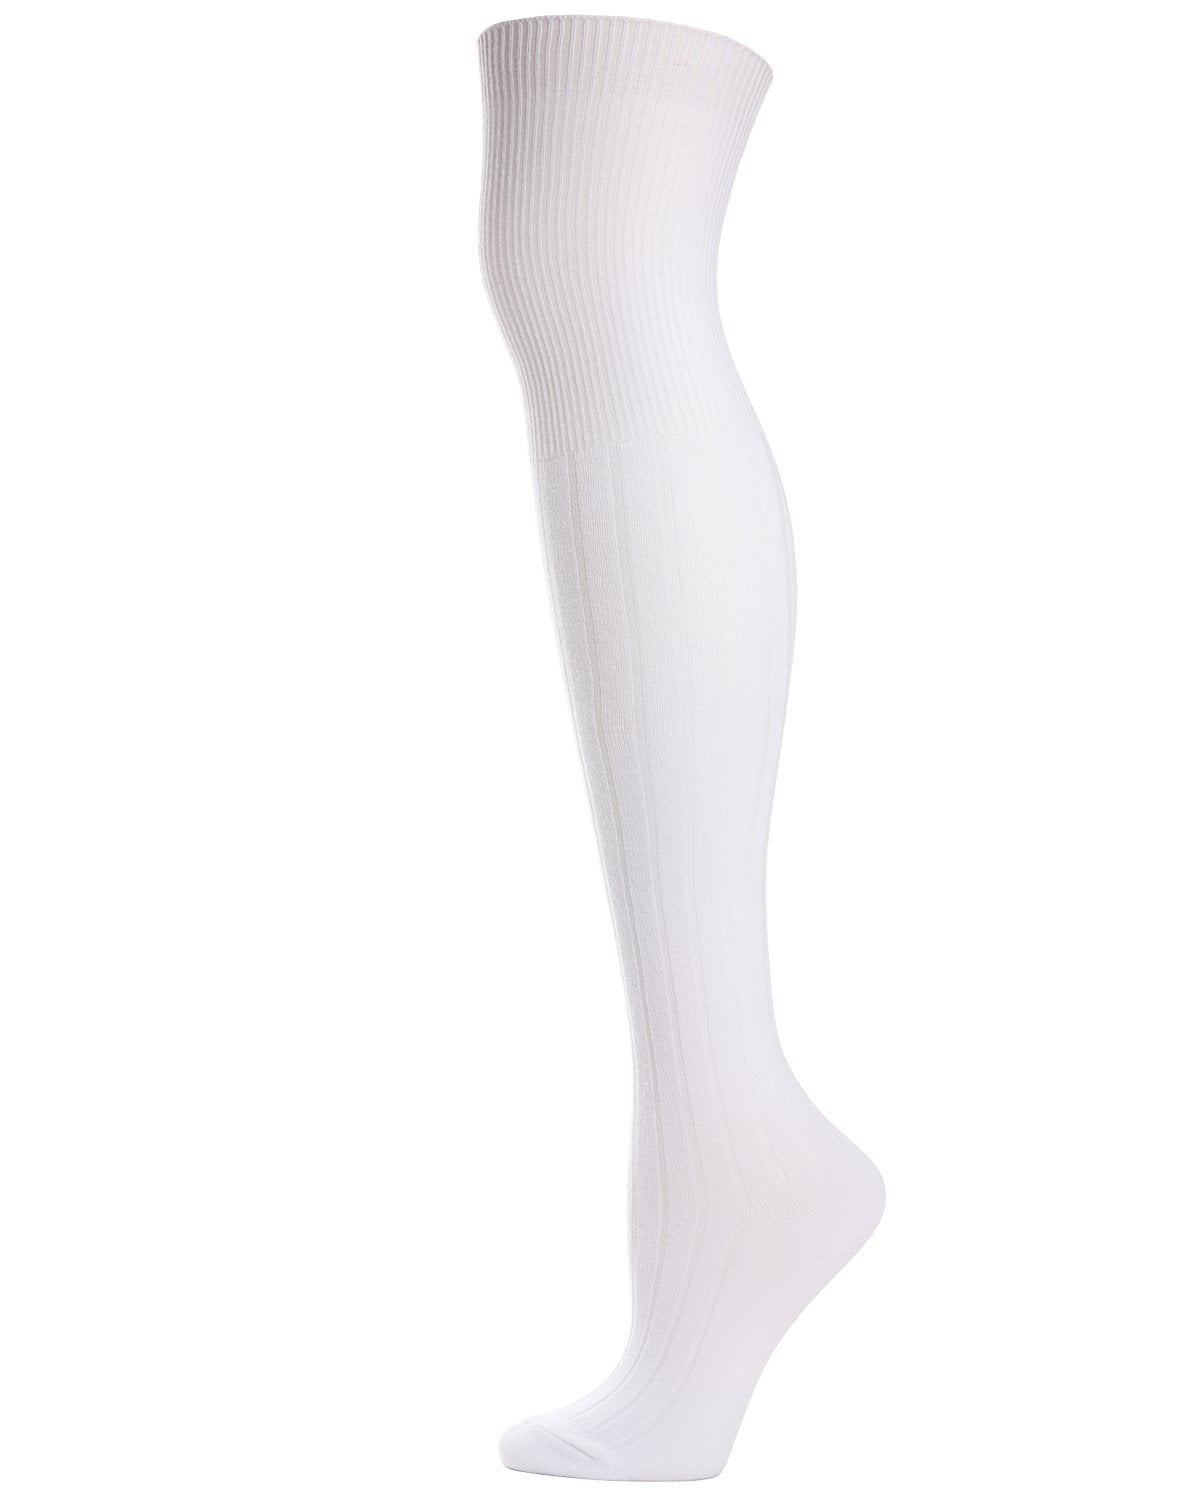 MeMoi - MeMoi Girls Grey Knee High Socks | Extra Long Knee High Socks ...